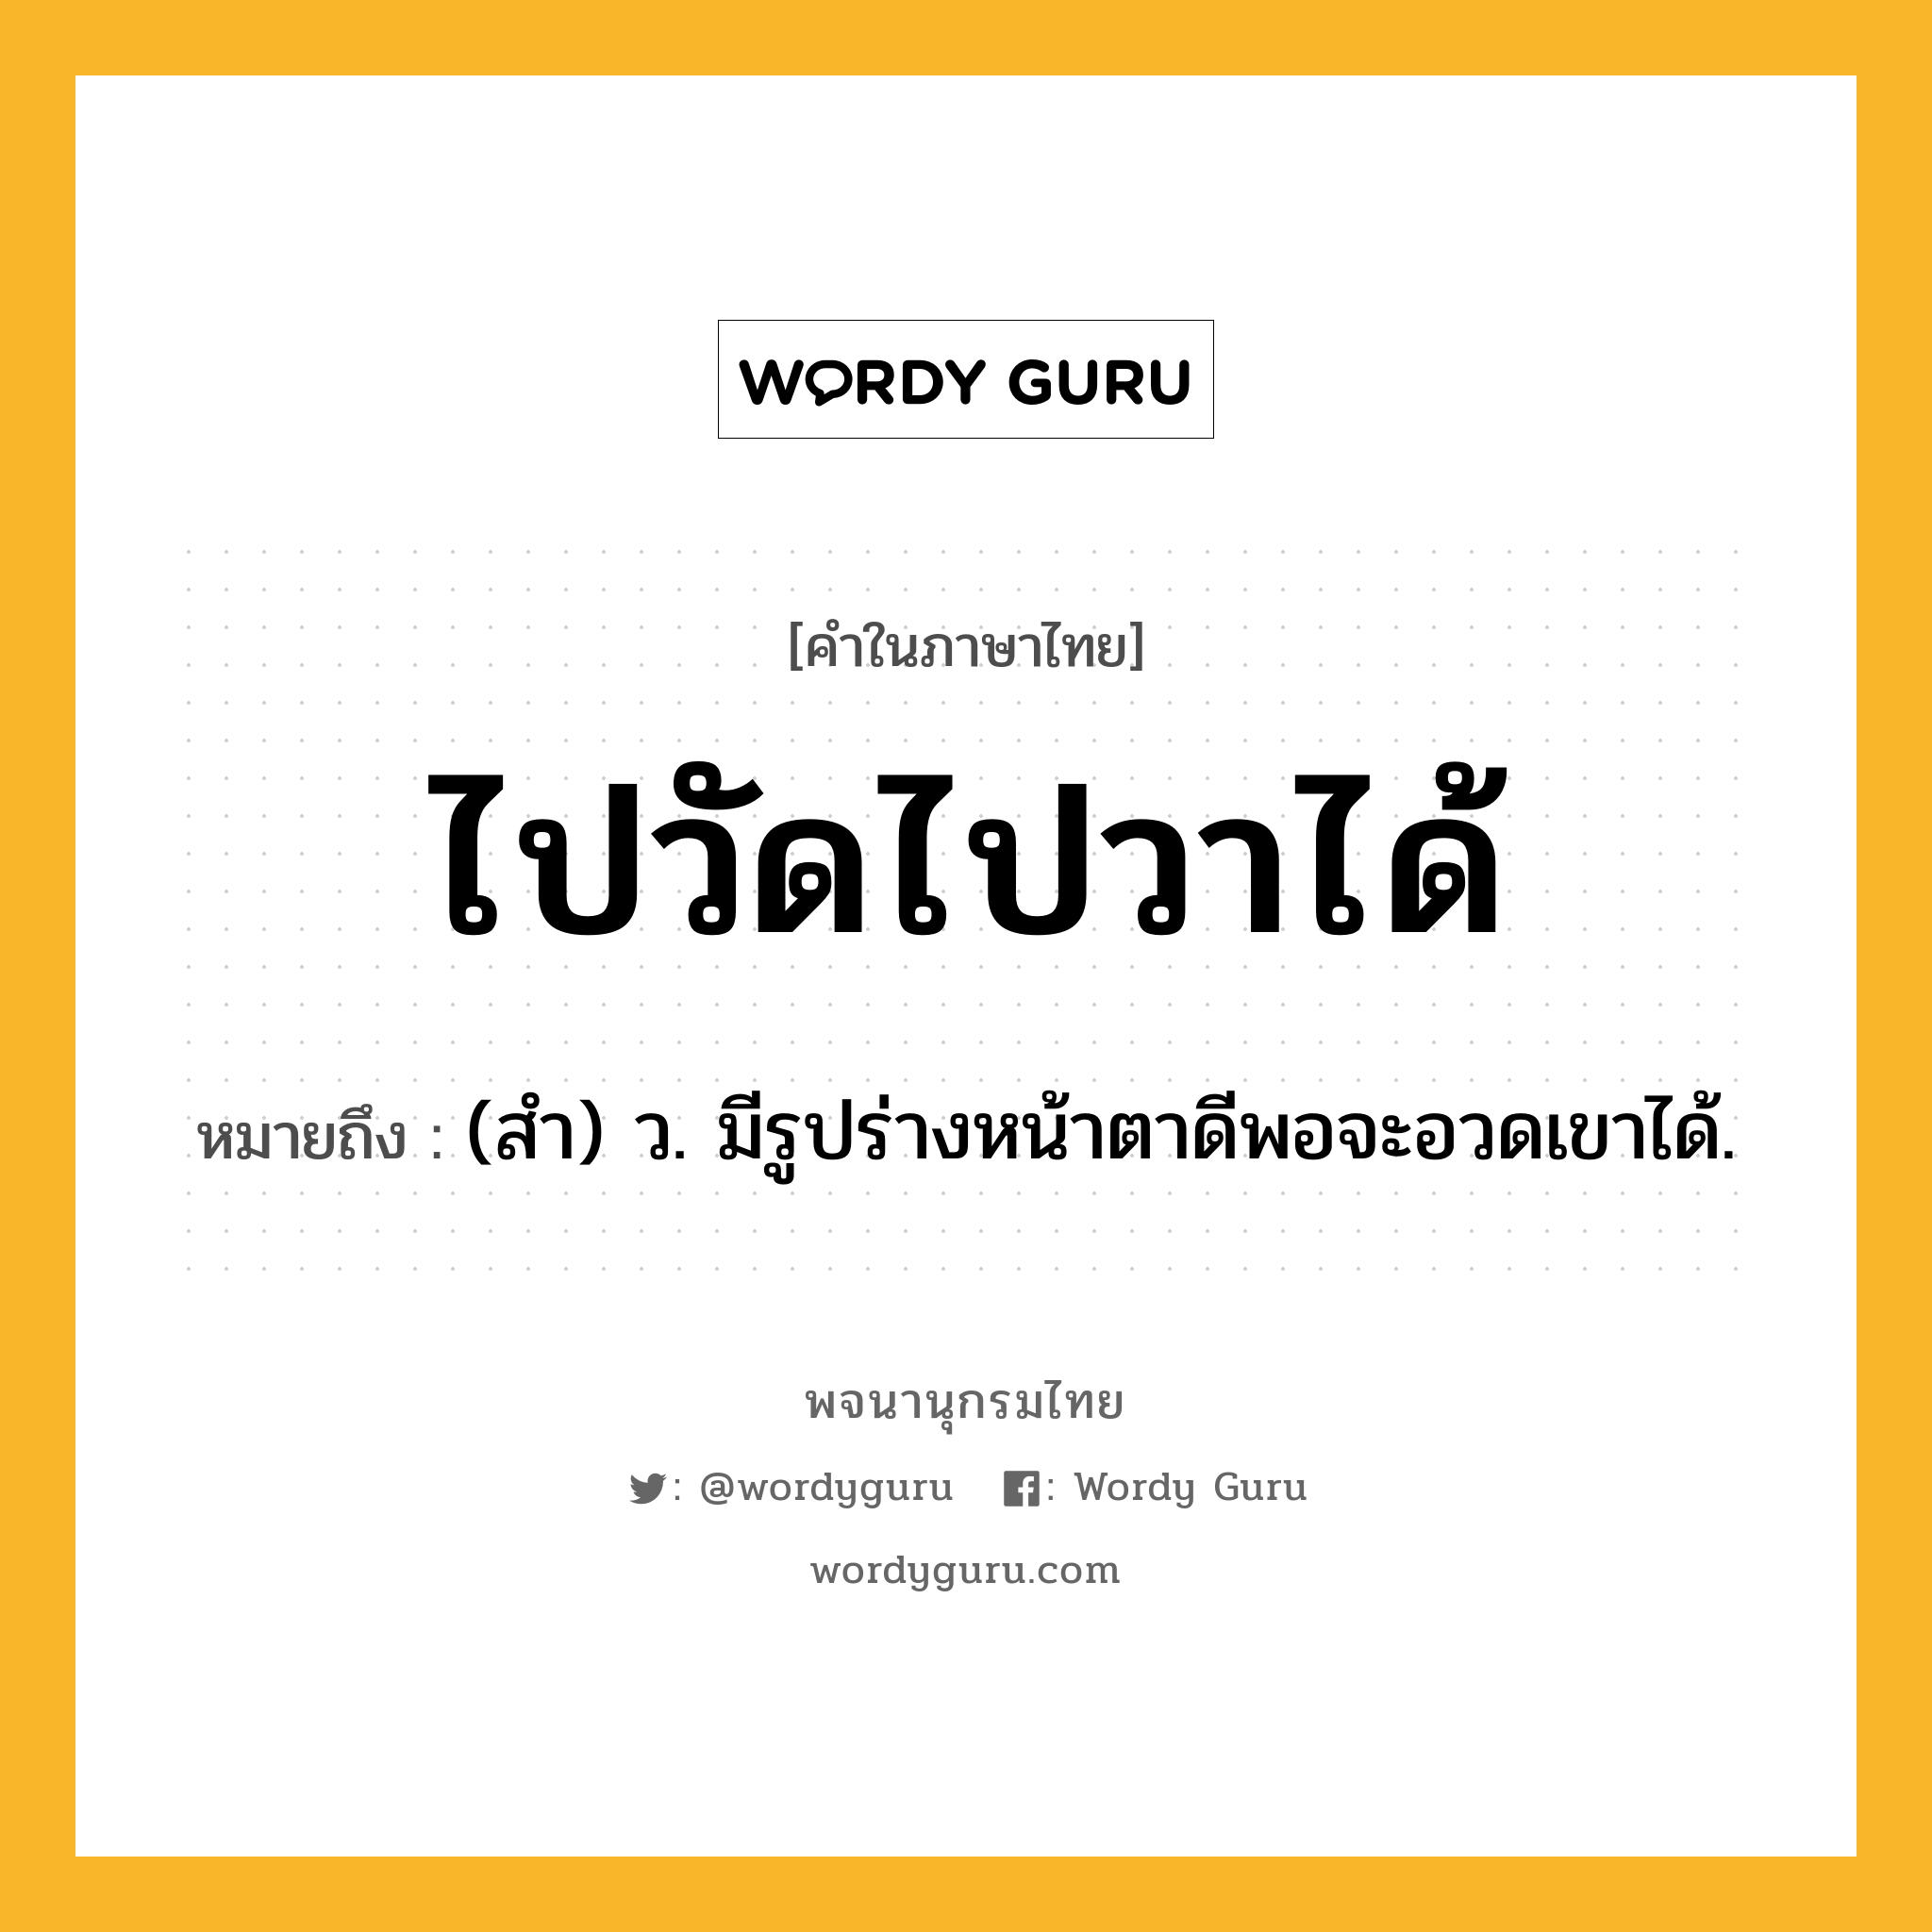 ไปวัดไปวาได้ ความหมาย หมายถึงอะไร?, คำในภาษาไทย ไปวัดไปวาได้ หมายถึง (สํา) ว. มีรูปร่างหน้าตาดีพอจะอวดเขาได้.